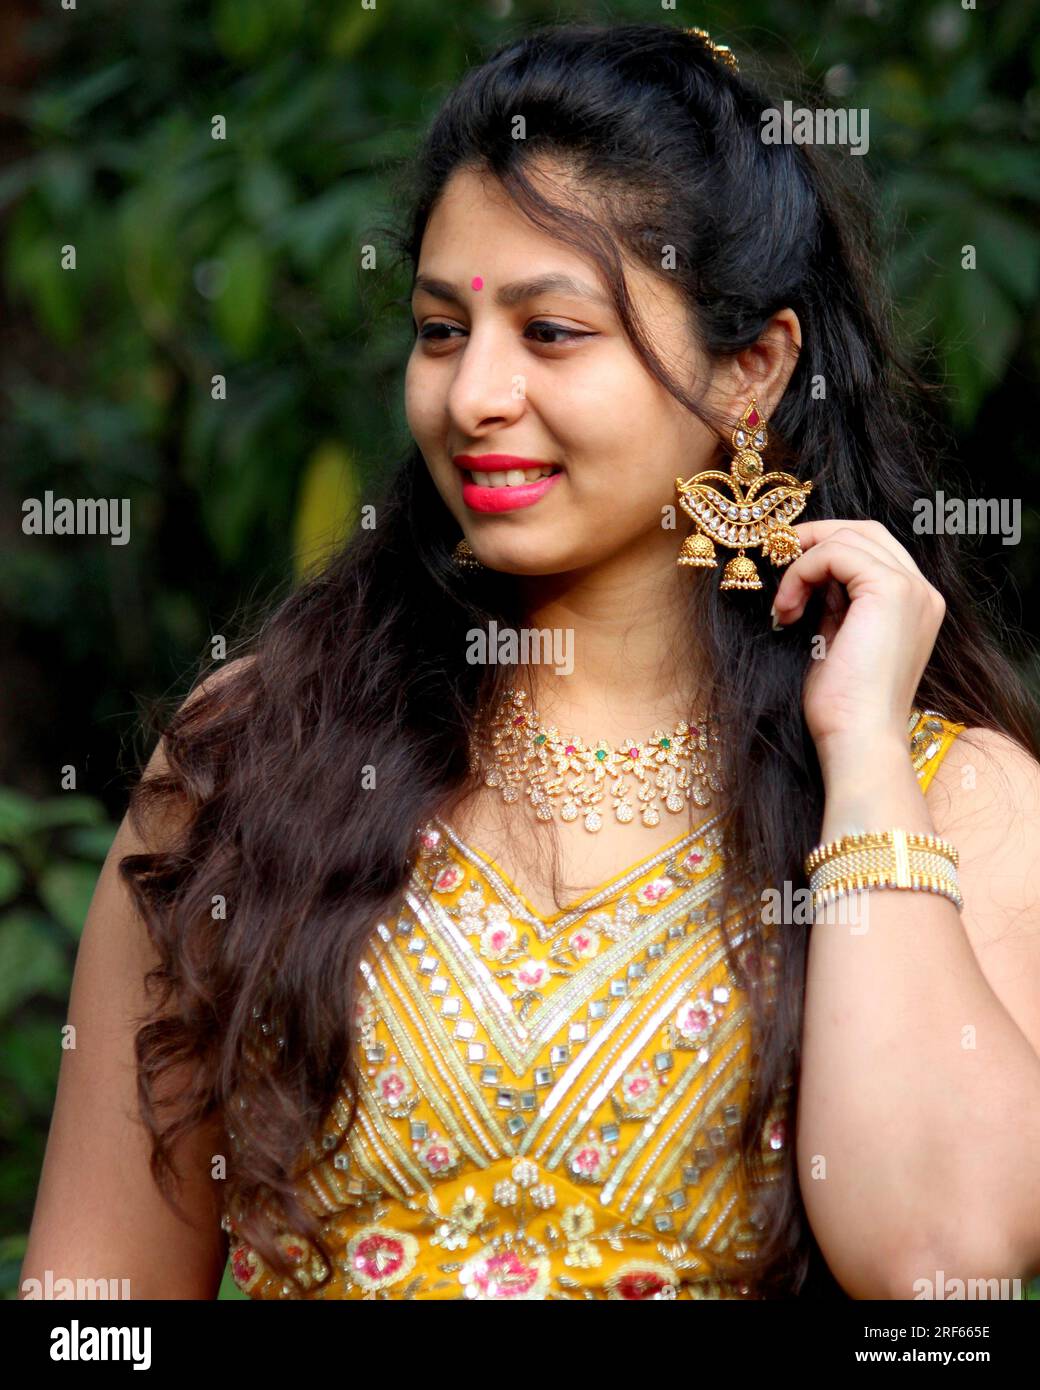 Wunderschöne Frau mit langen lockigen Haaren, trägt gelbe Ghaghra und Chili und Diya-förmige Ohrringe und Schmuck für die indische Hochzeit. Ohrring in Lampenform. Stockfoto